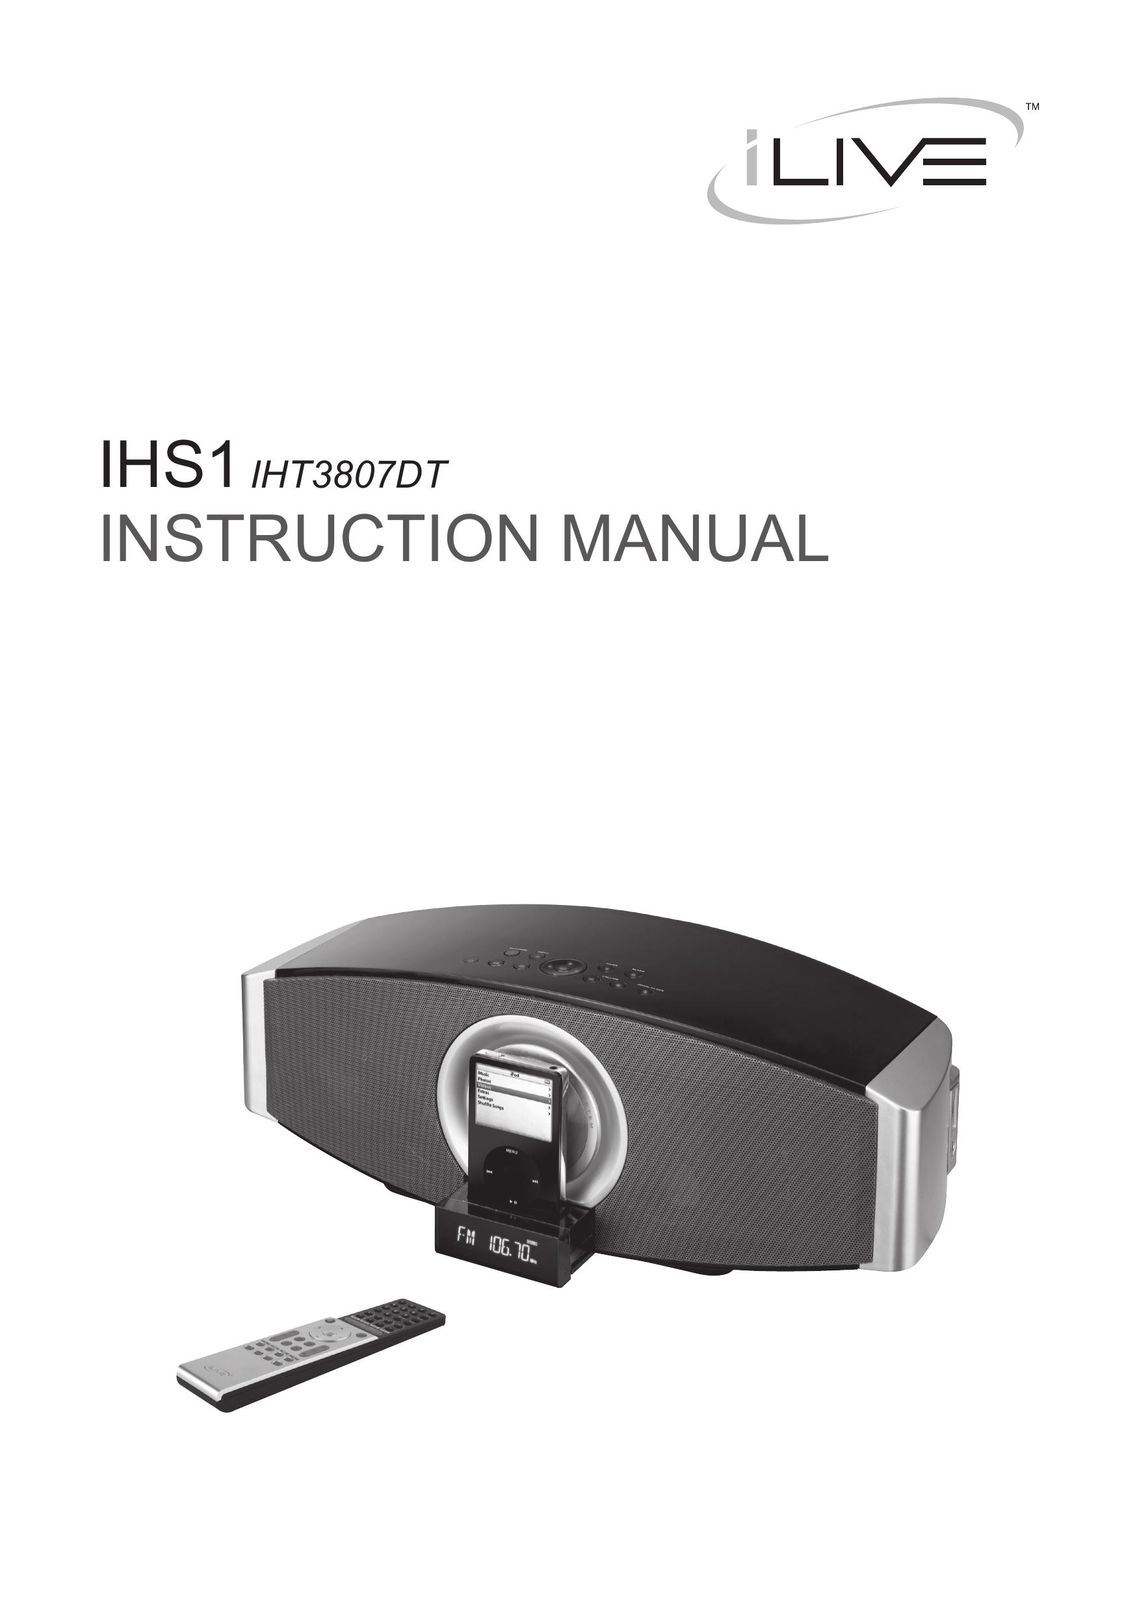 iLive IHT3807DT MP3 Docking Station User Manual